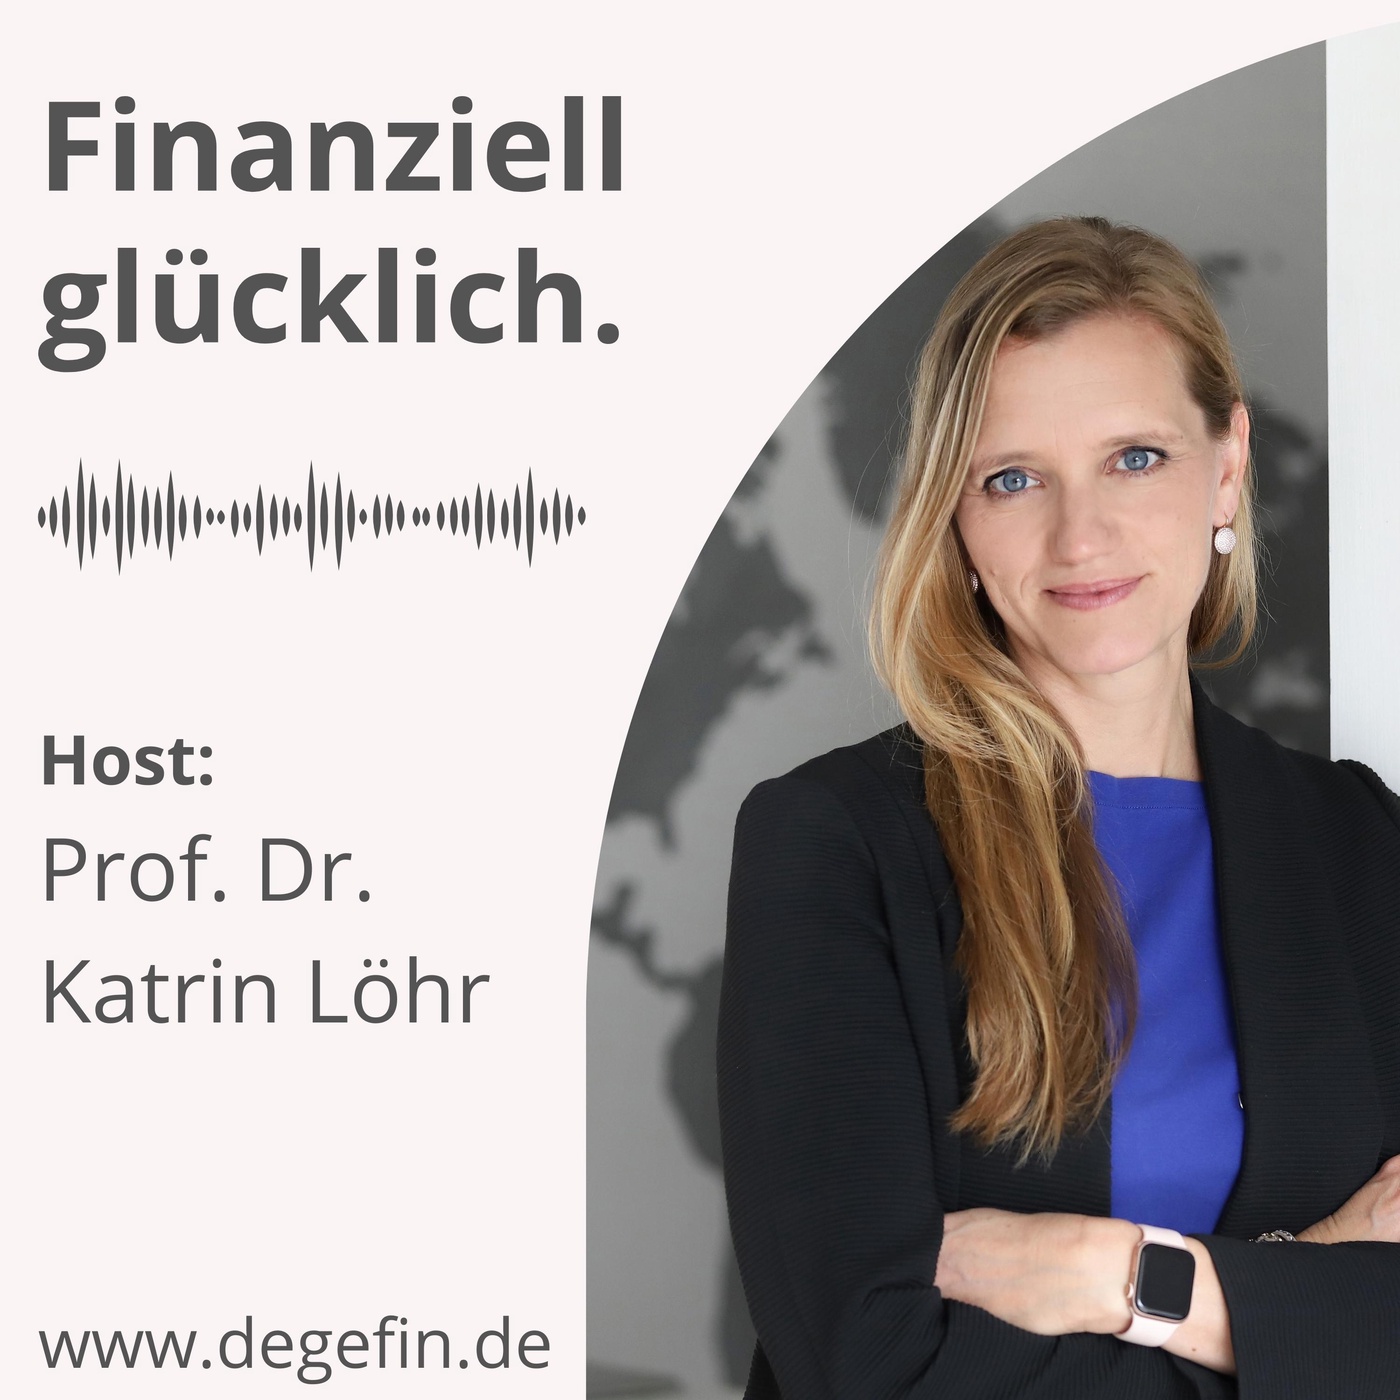 Repost: Dr. Ausbüttel als Pionier für finanzielle Bildung im Unternehmen